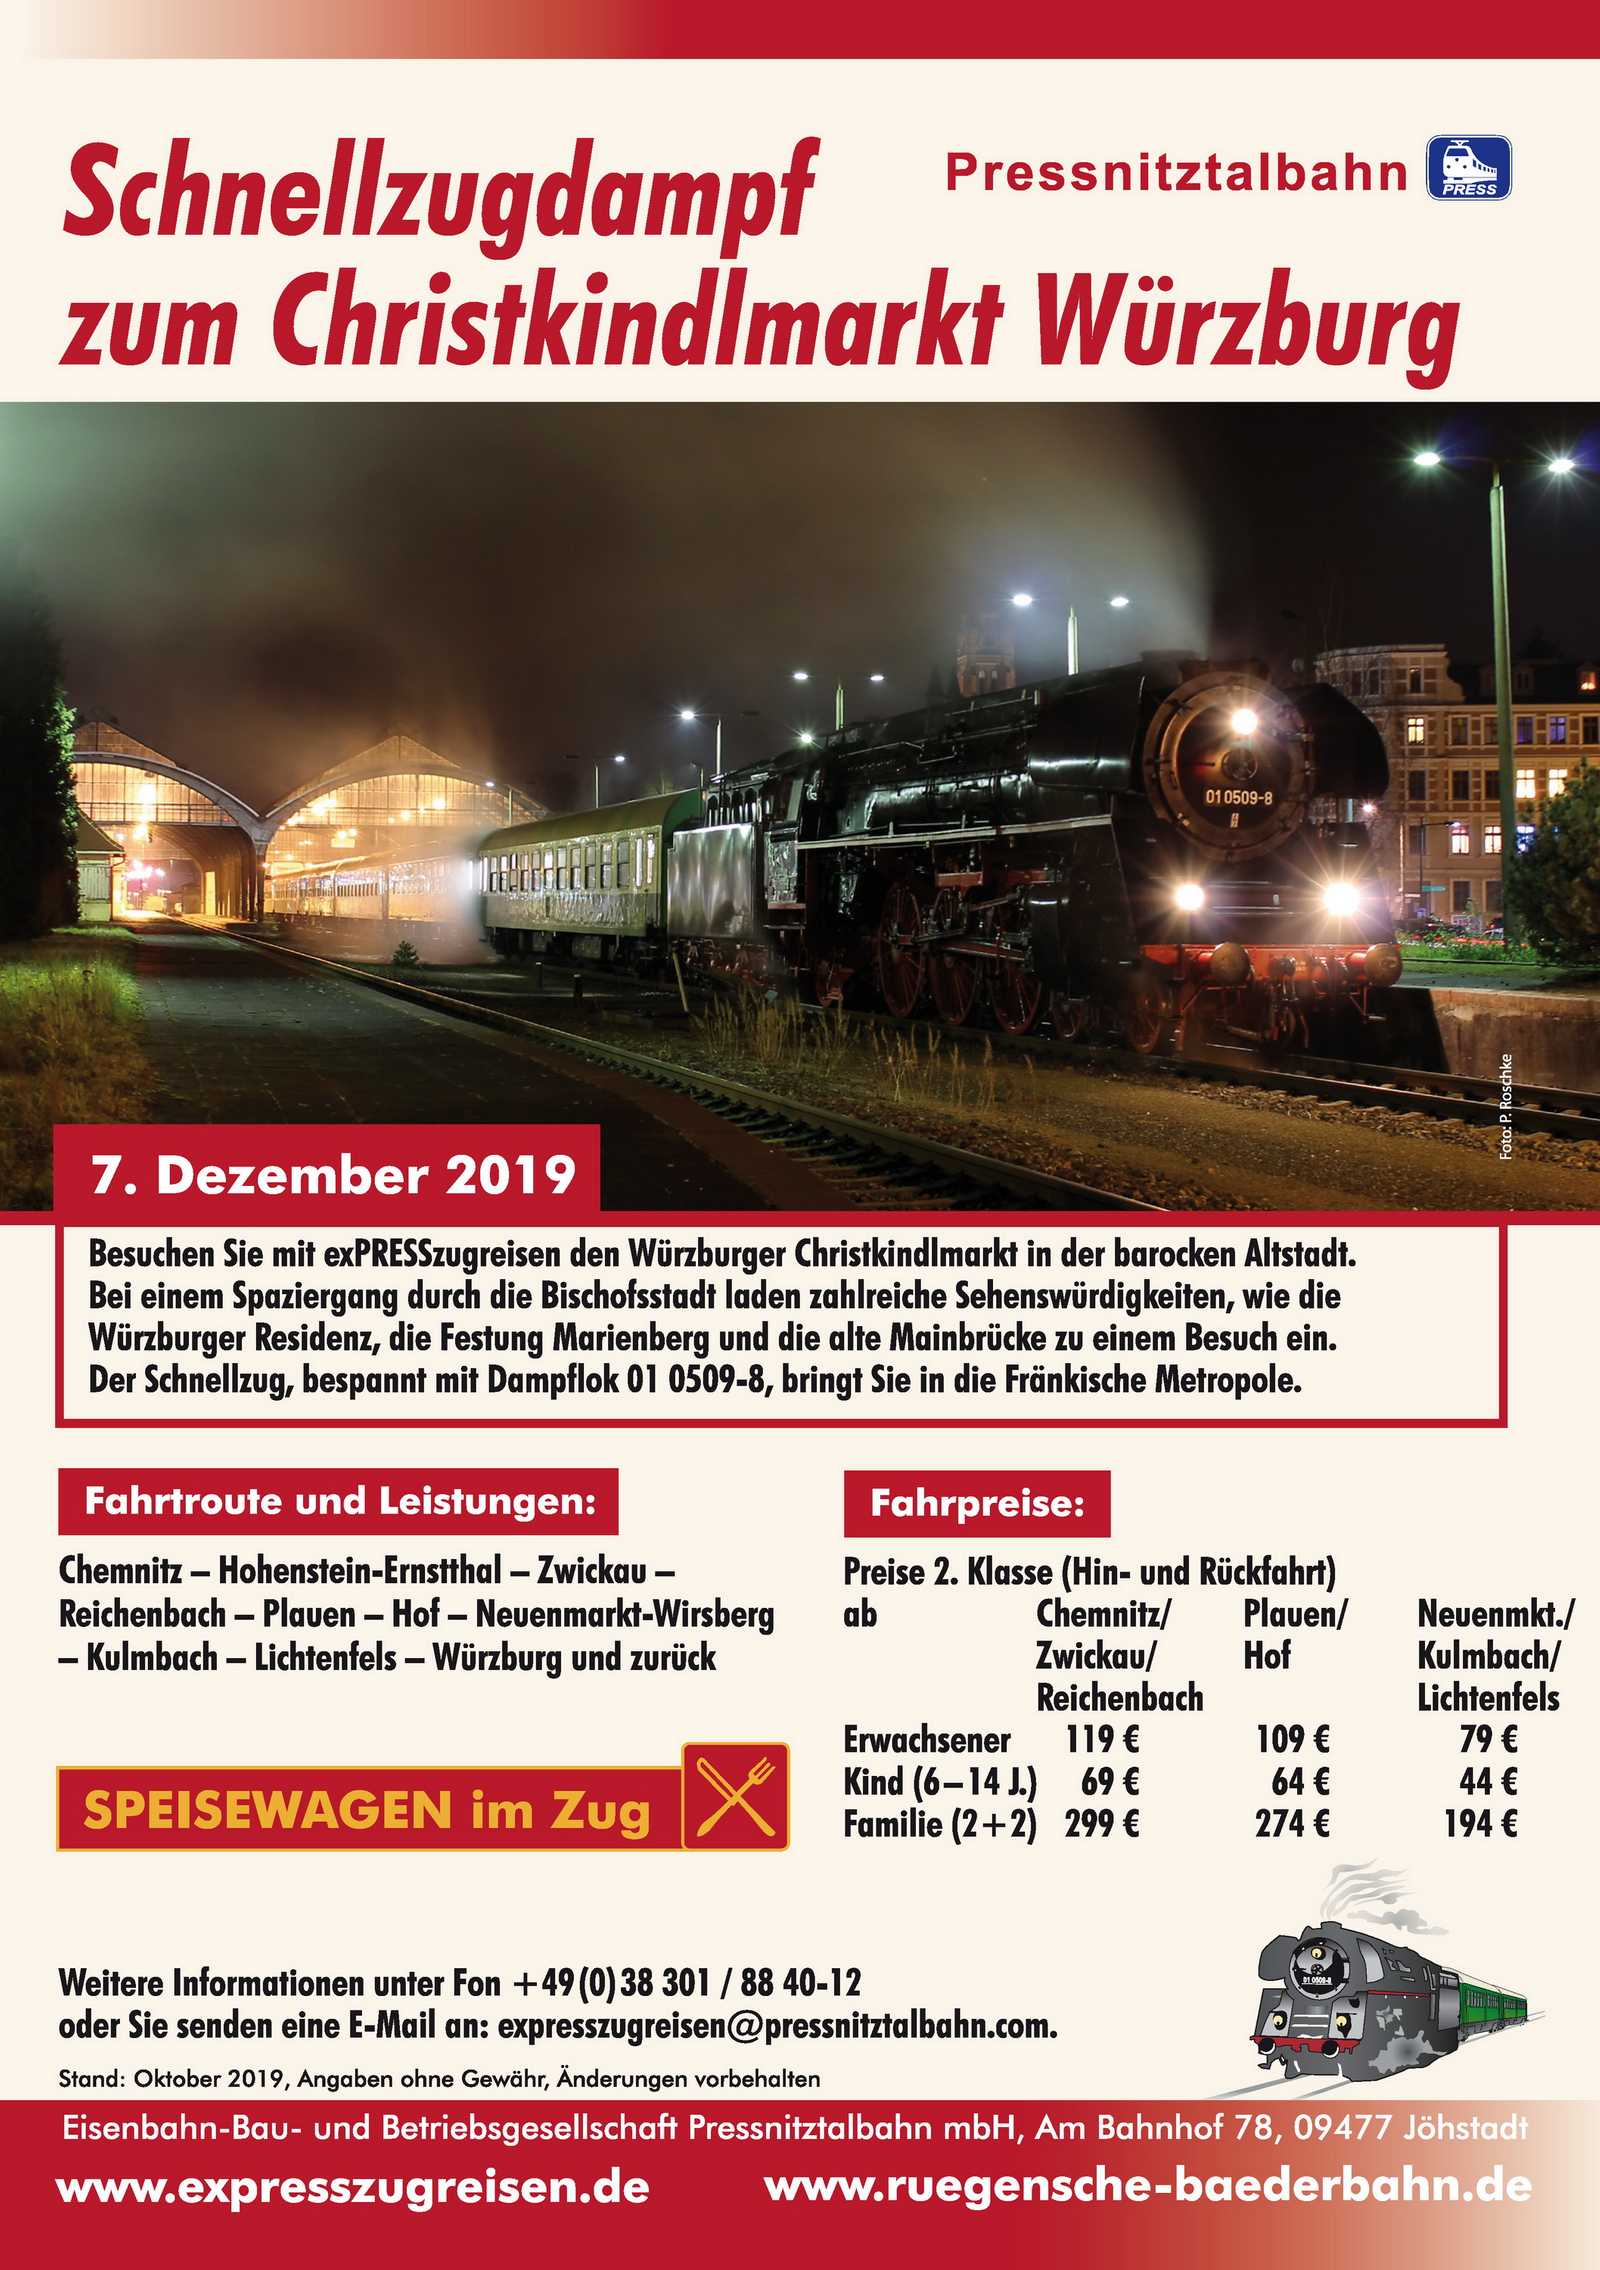 Veranstaltungsankündigung 7. Dezember 2019: Schnellzugdampf zum Christkindlmarkt Würzburg